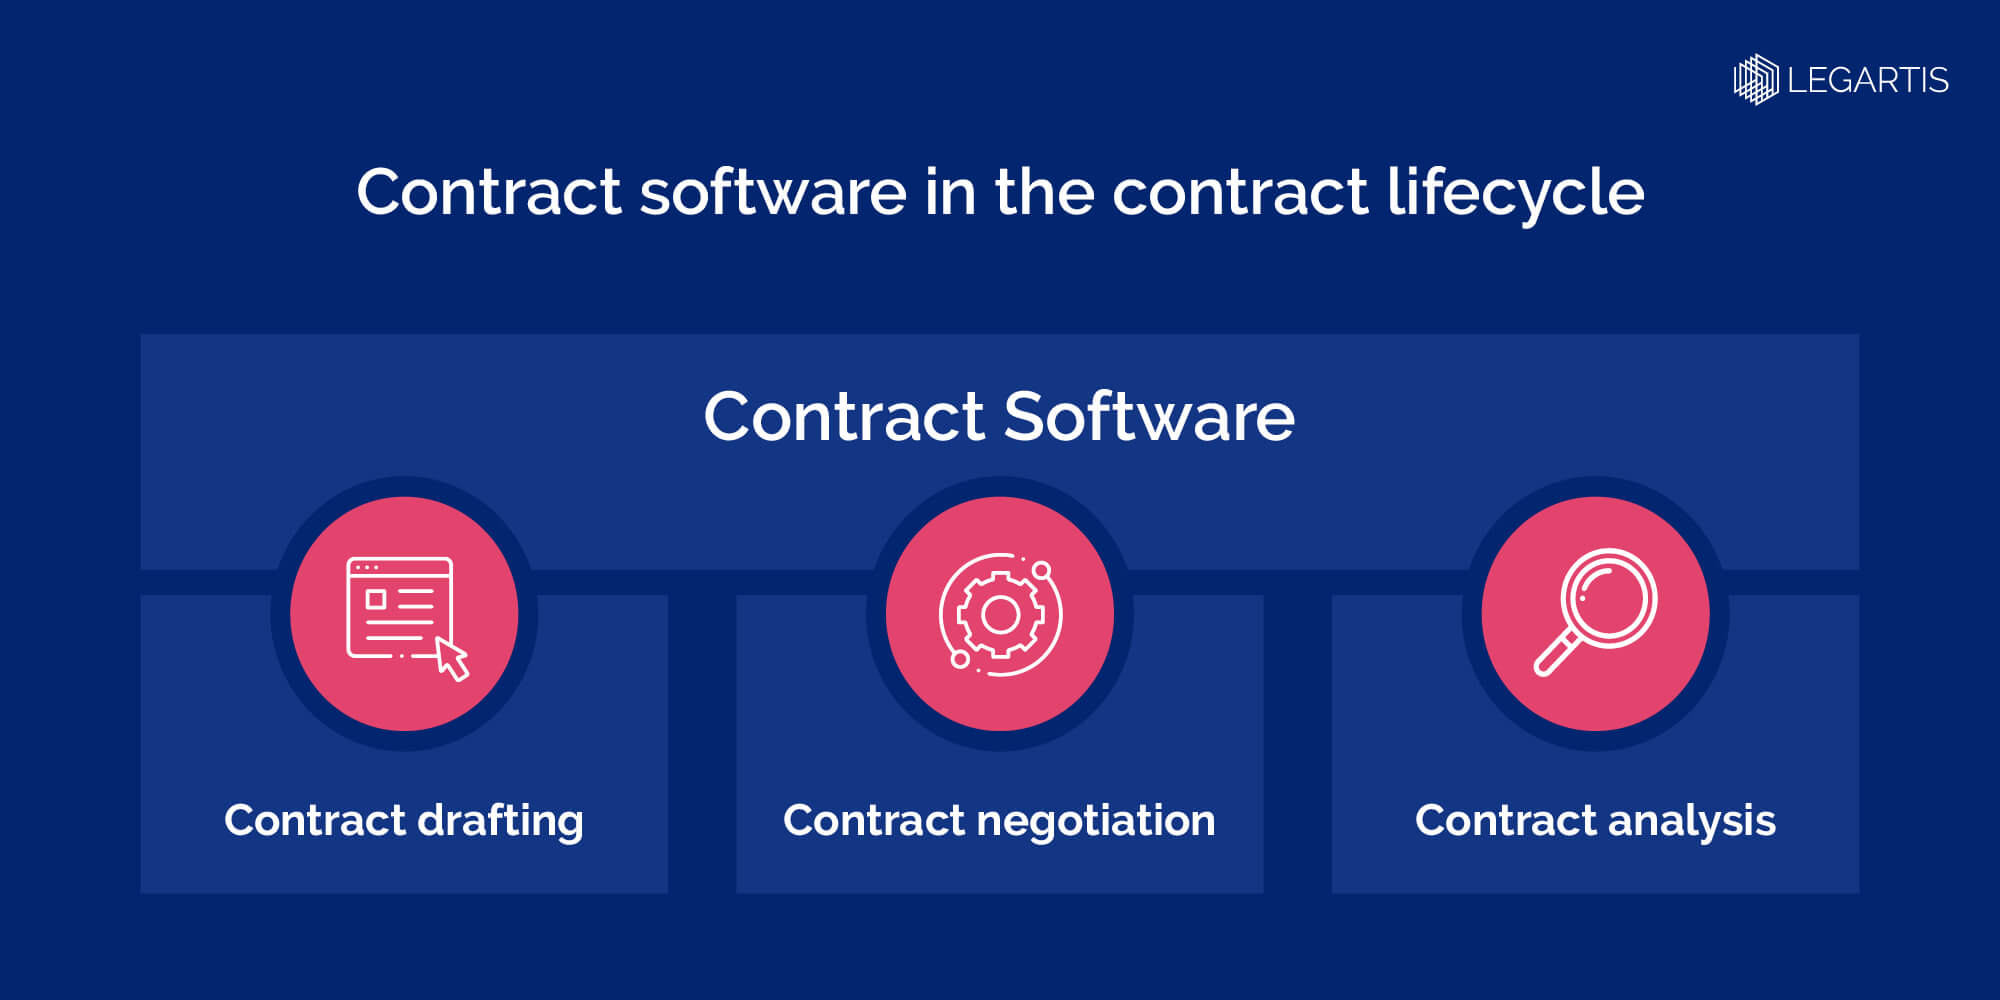 Legartis-Contract Software im Vertragslebenszyklus-Infographic-EN